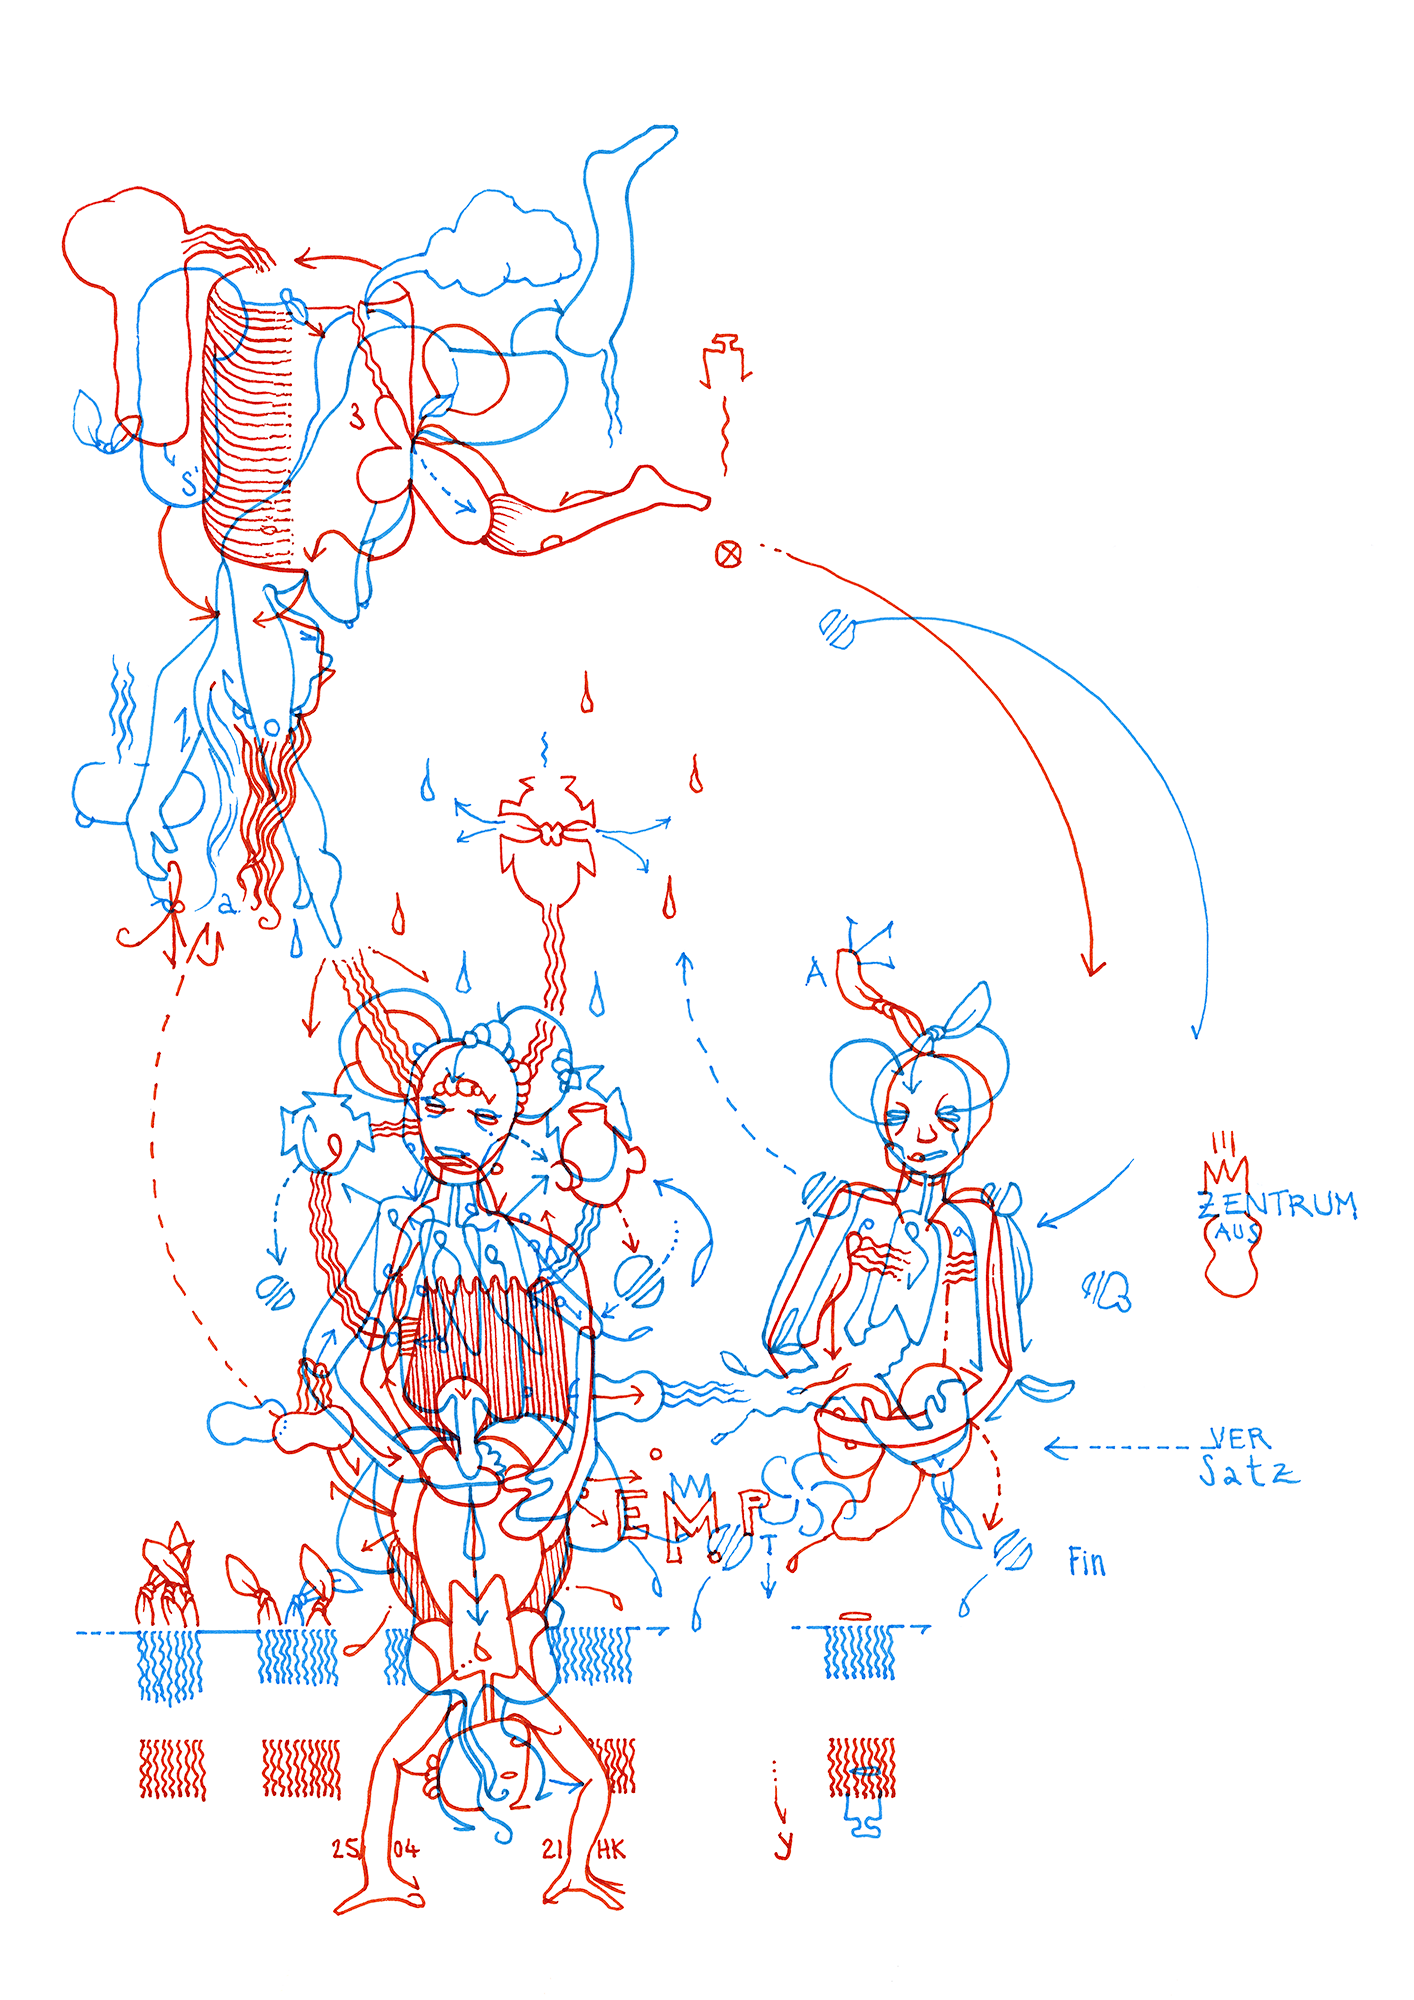 Hannes Kater: Tageszeichnung (Zeichnung/drawing) vom 25.04.2021 (1414 x 2000 Pixel)